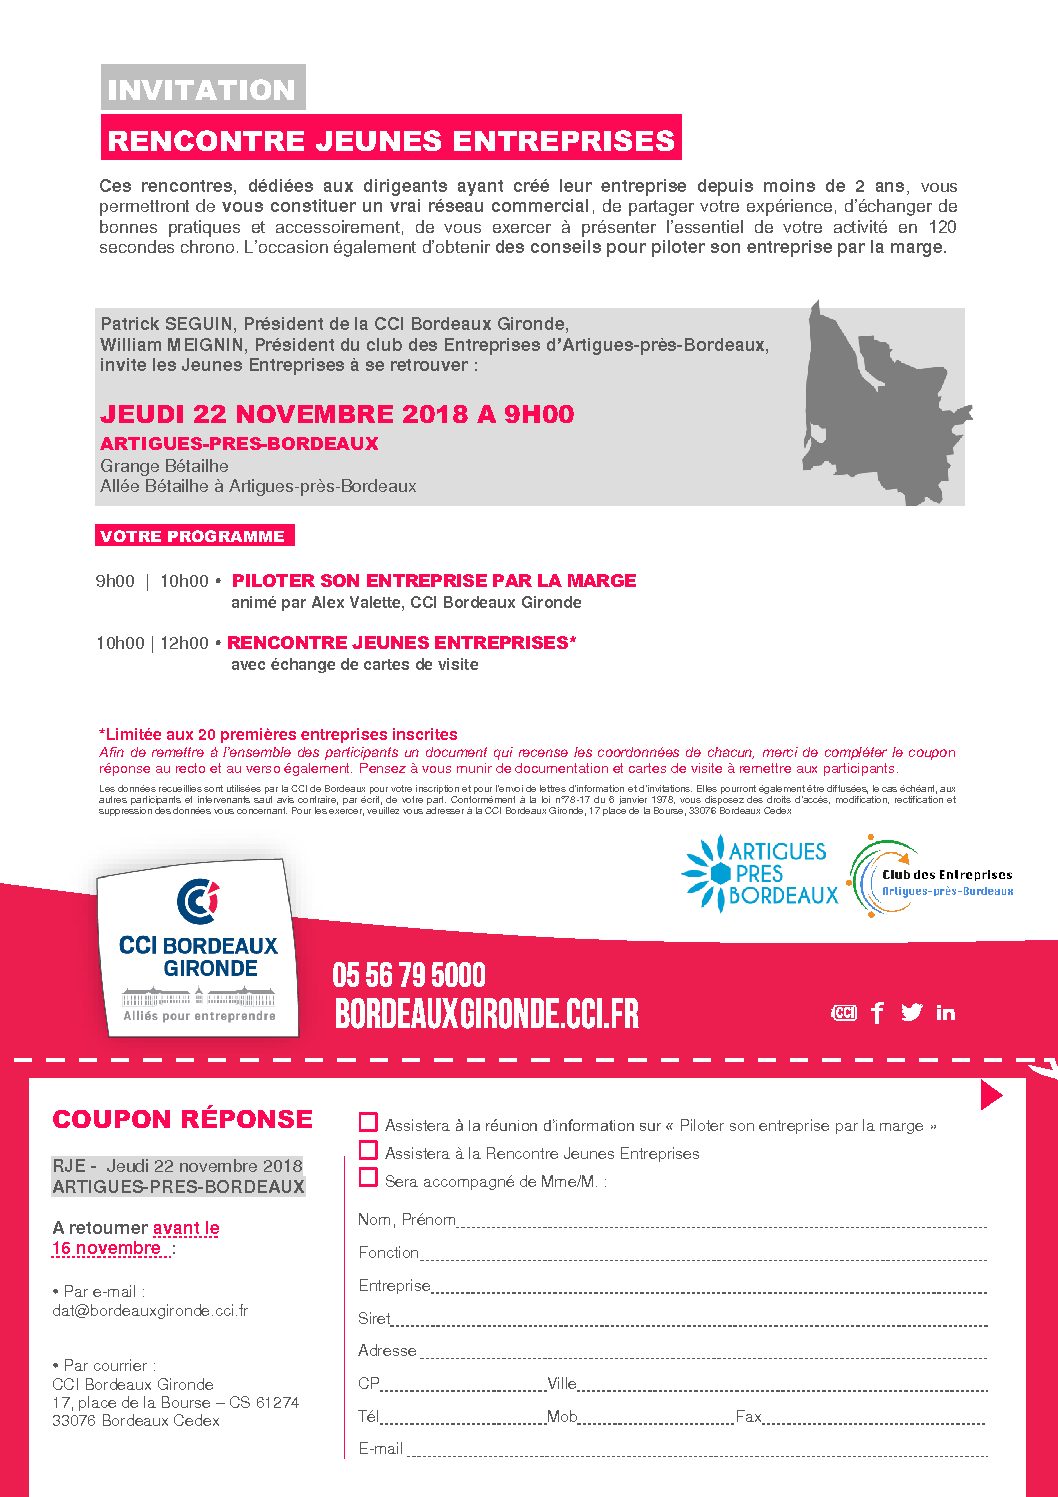 RENCONTRE JEUNES ENTREPRISES JEUDI 22 novembre à 9h00 Château Bétailhe ARTIGUES